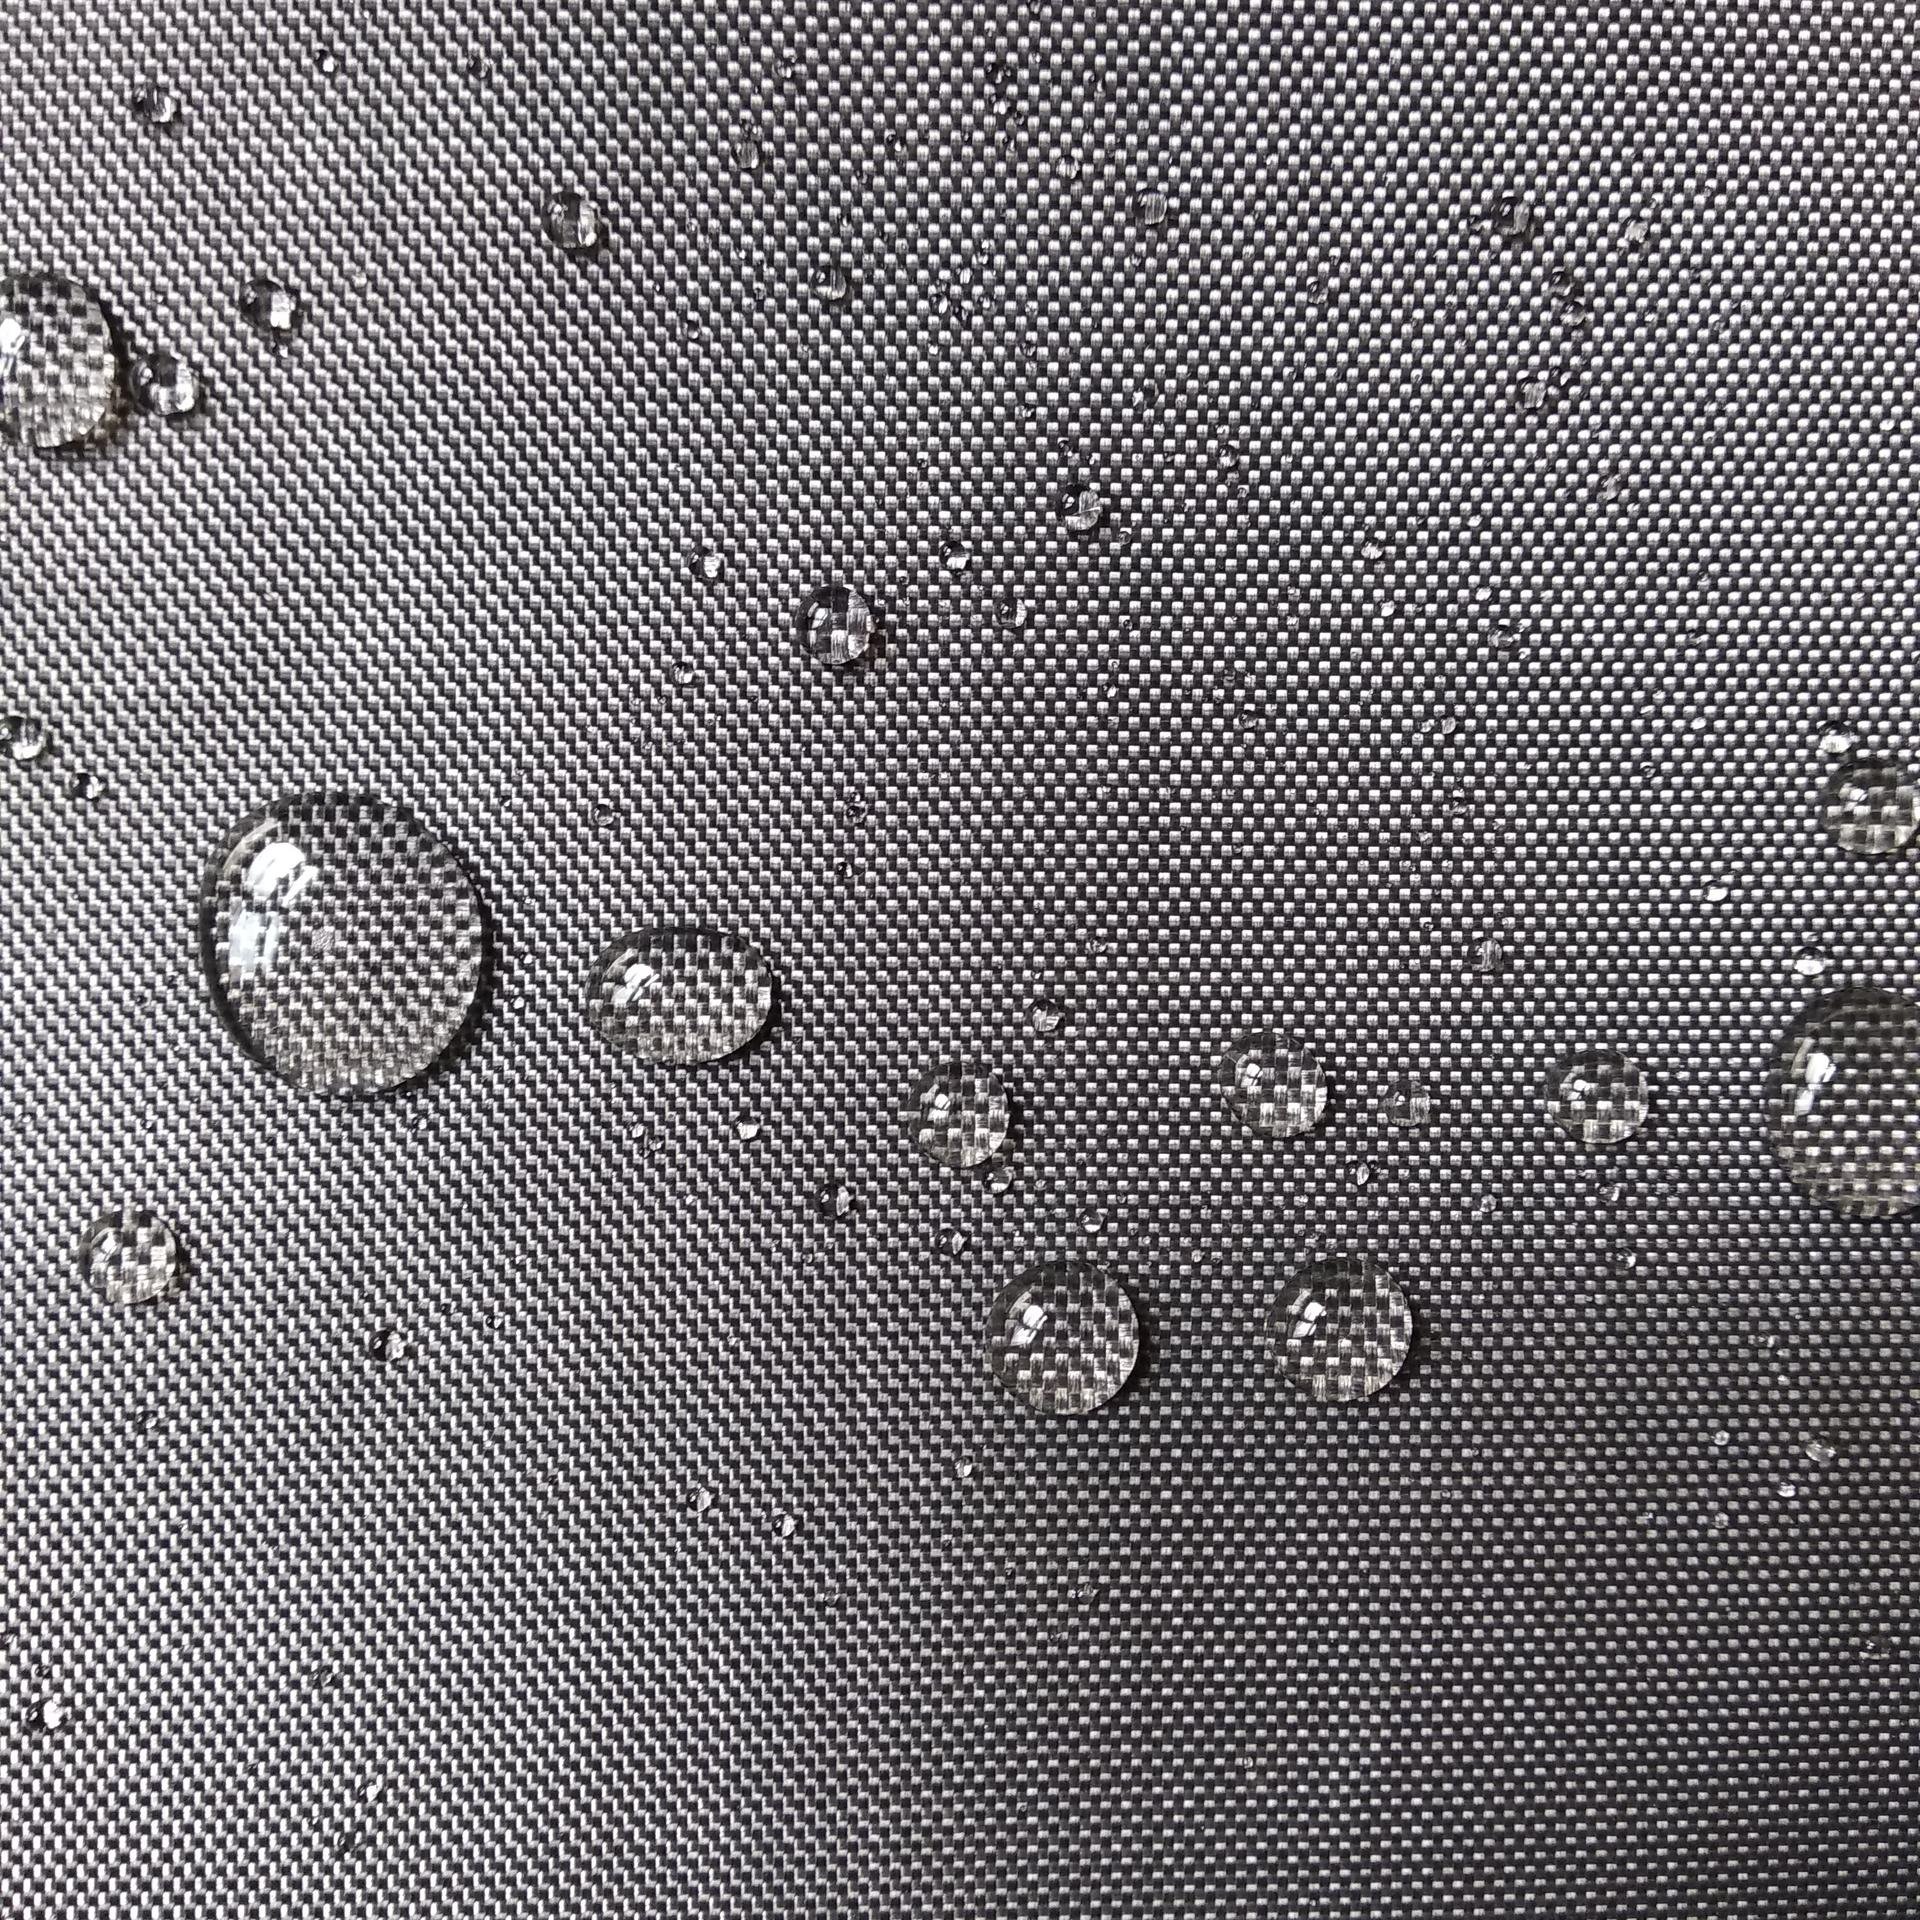 安朗公司专业生产黑色玻璃纤维布,高密度黑色玻璃纤维布,黑色无碱憎水玻璃纤维布主要用于声屏障包裹、保温棉包裹防腐憎水作用。图片